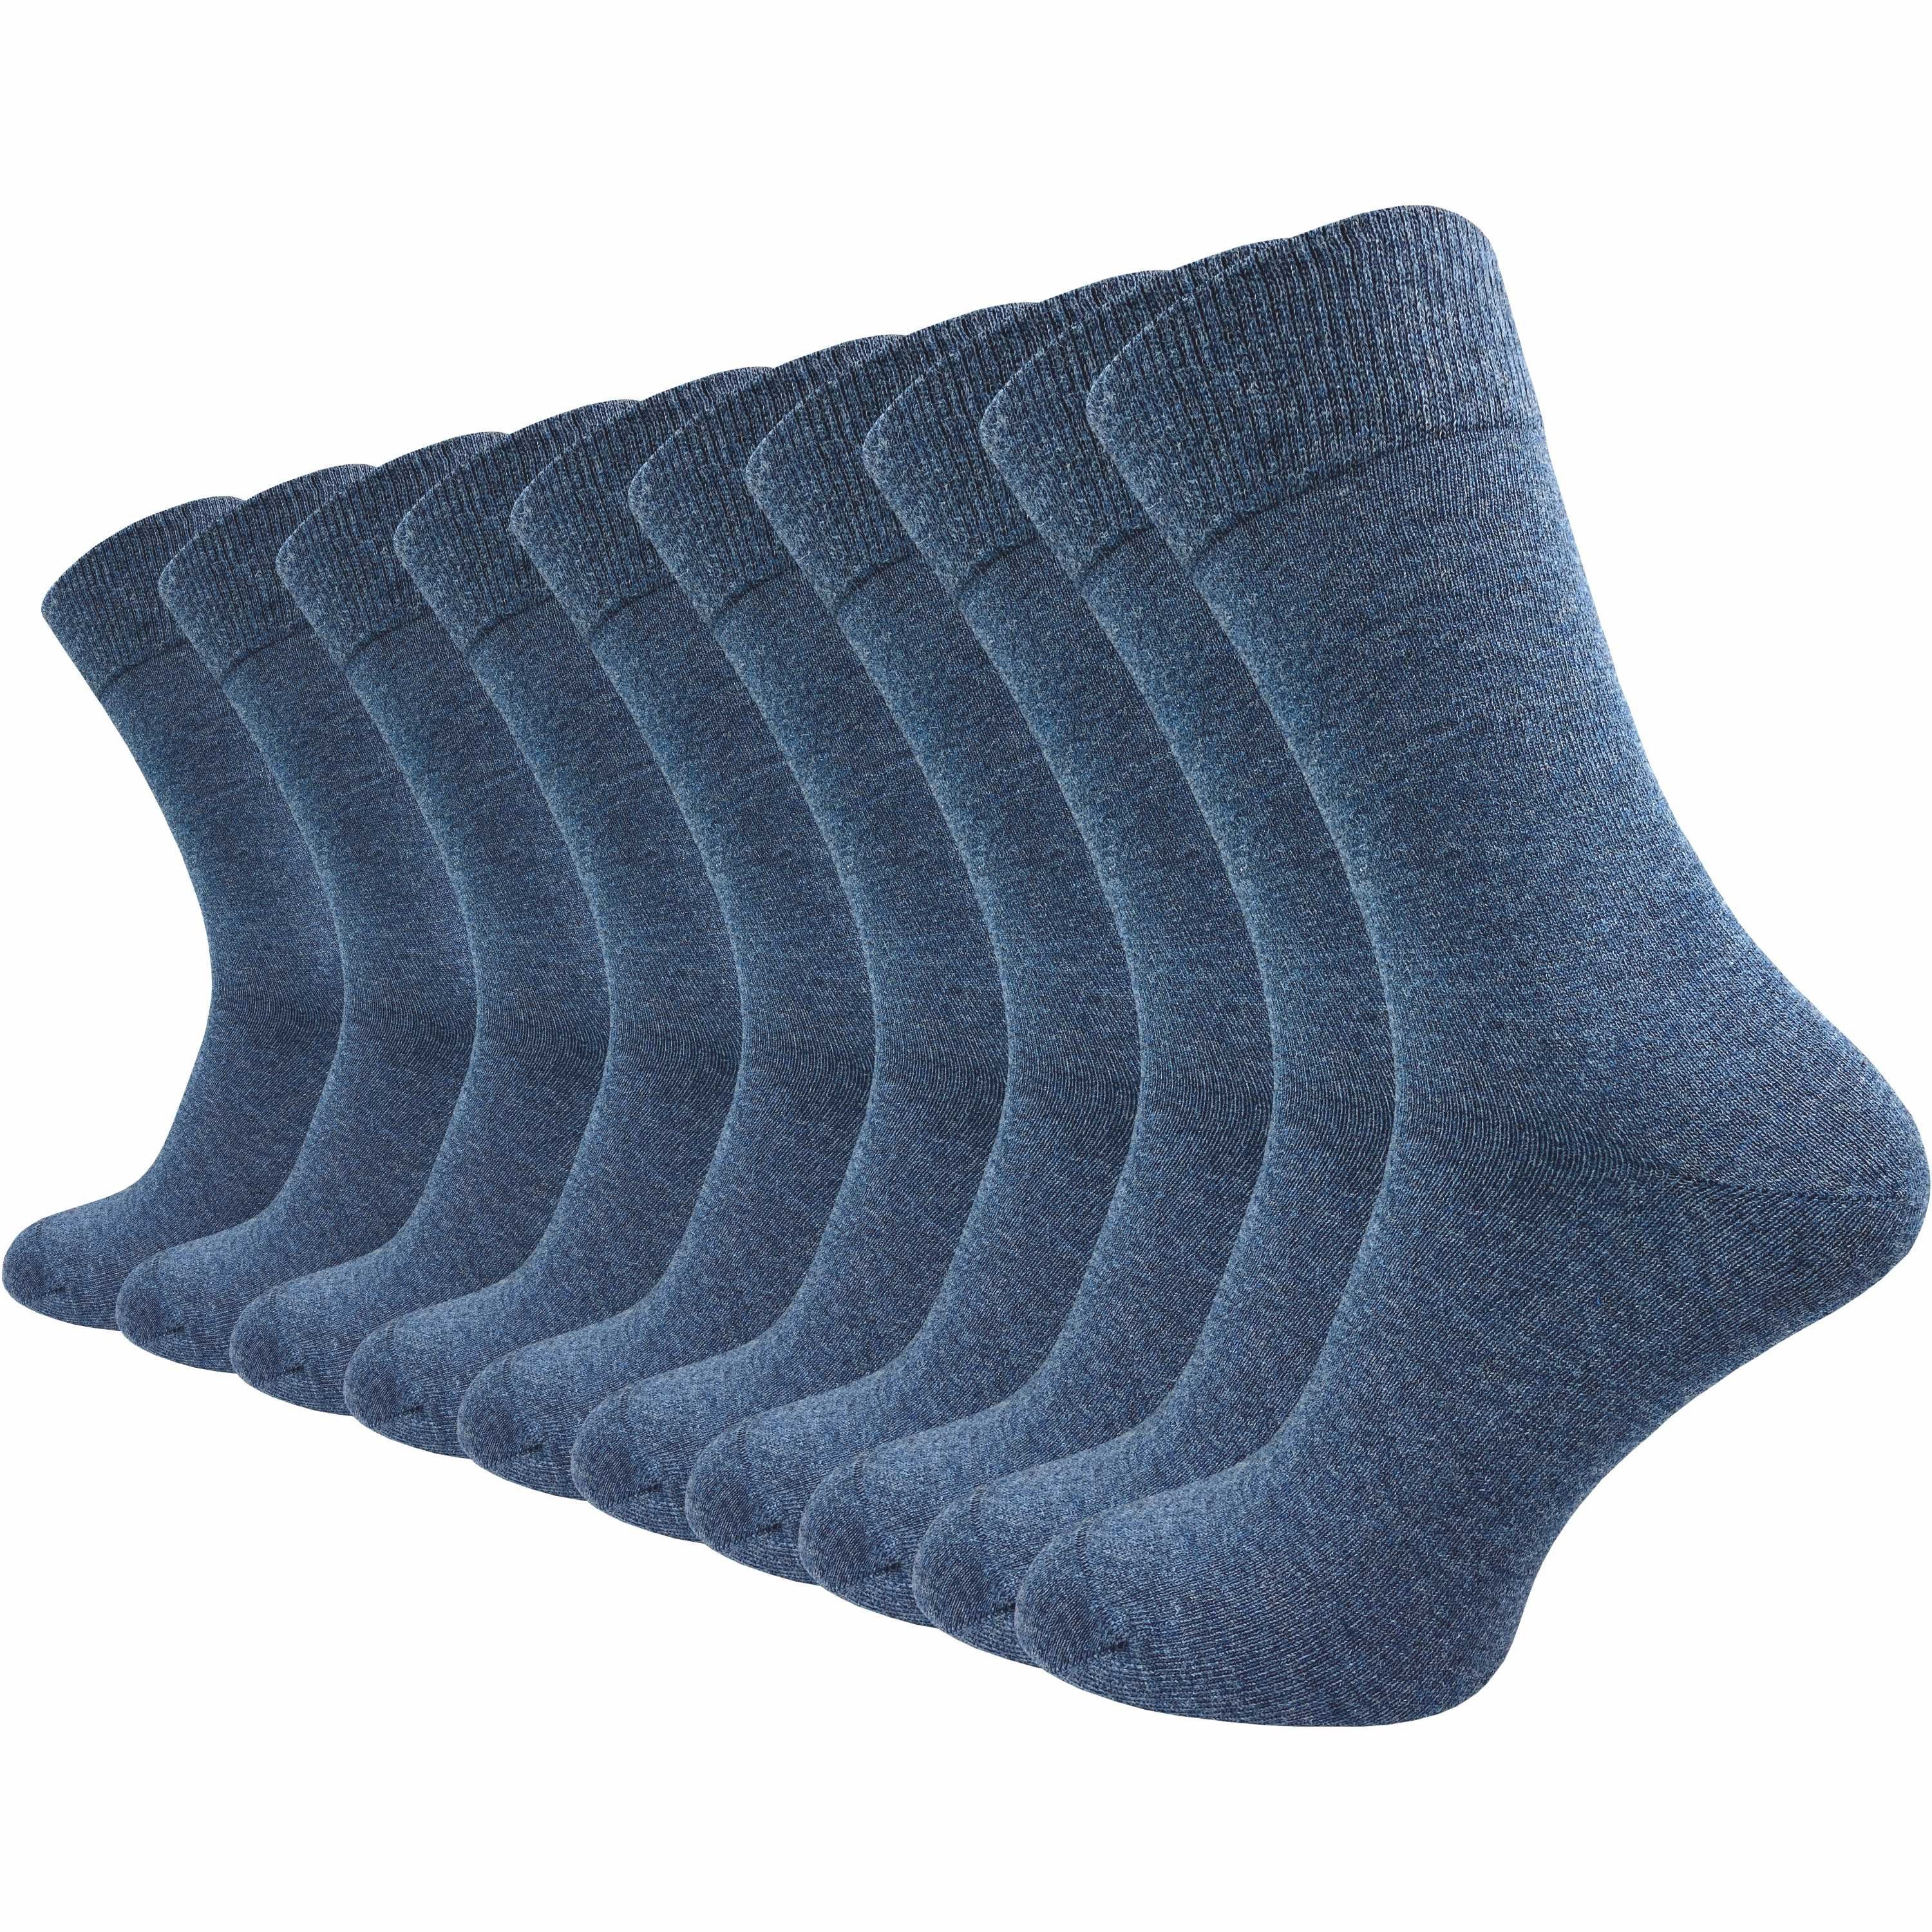 GAWILO Basicsocken für Damen & Herren aus hochwertiger Baumwolle ohne drückende Naht (10 Paar) Socken für den anspruchsvollen Alltag in schwarz, grau, blau und braun jeans